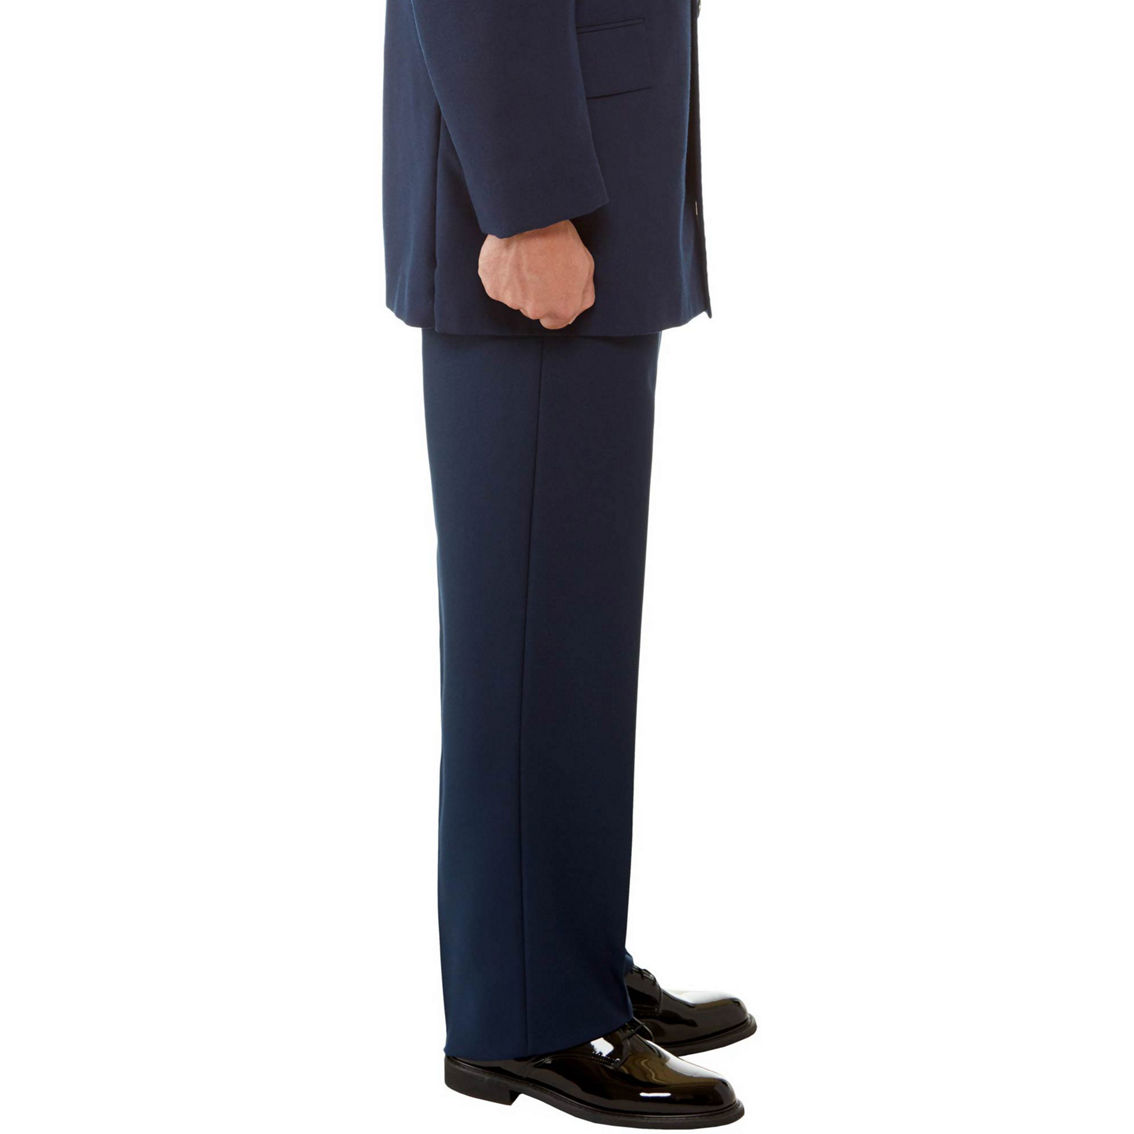 DLATS Air Force Men's Service Dress Uniform Trousers - Image 3 of 4